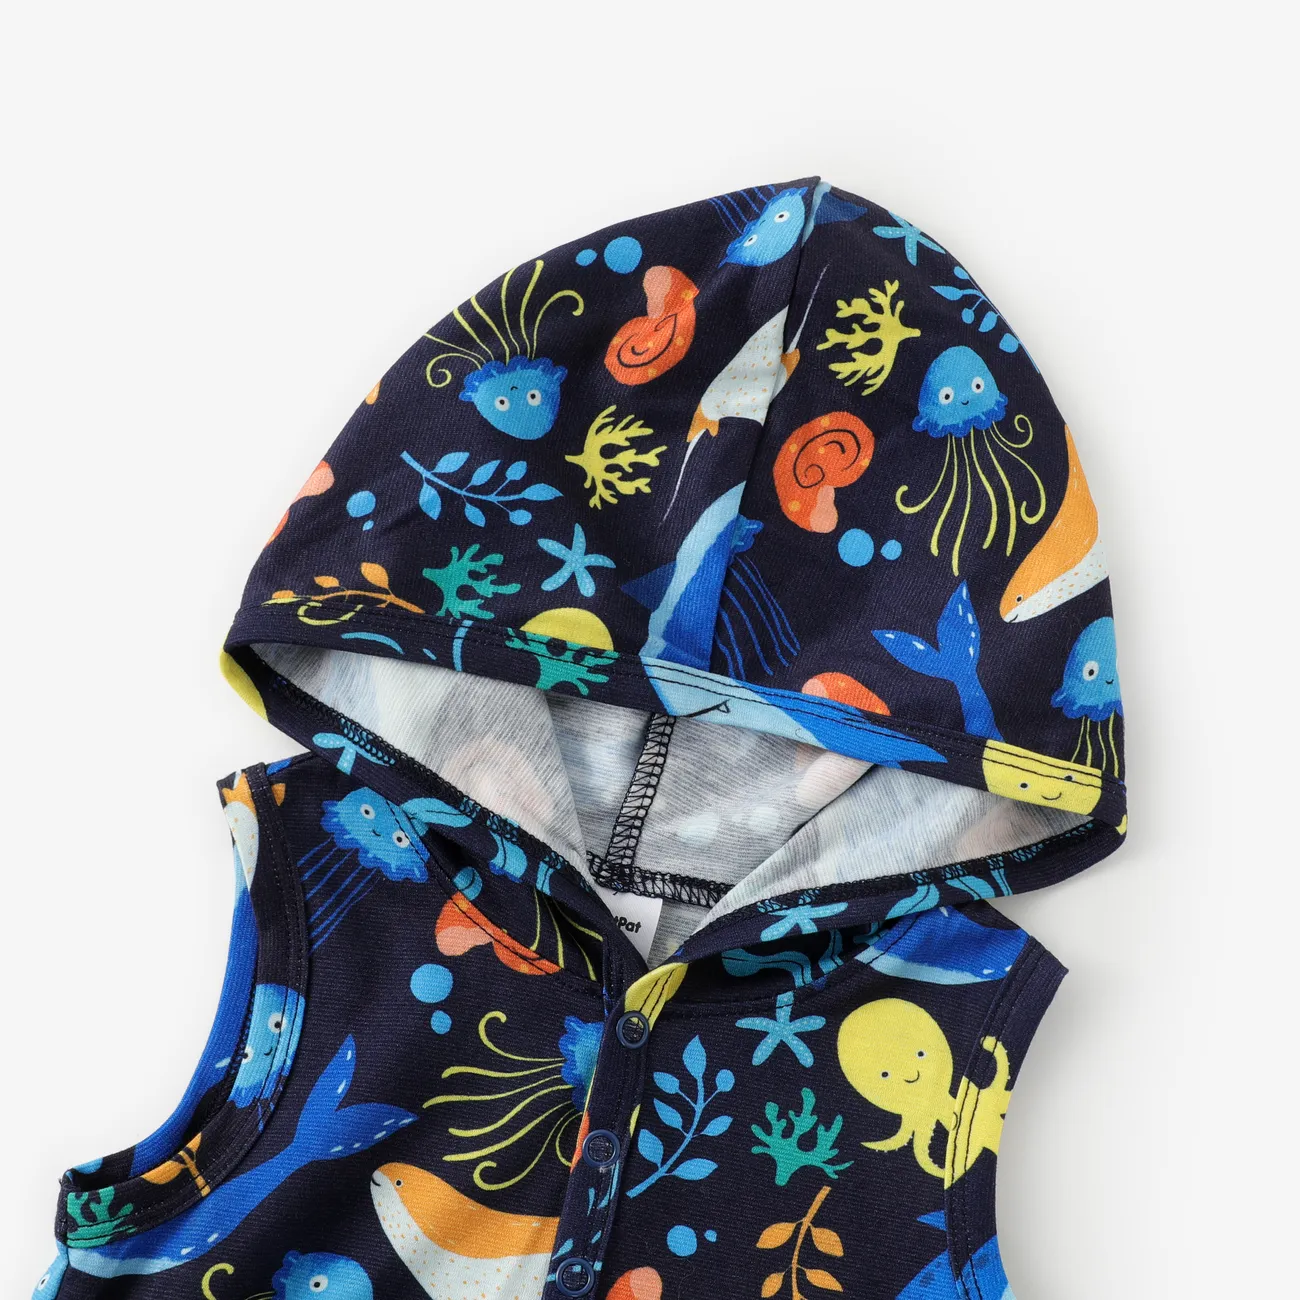 Baby Boy animal marinho Print pijama com capuz macacão Azul Escuro big image 1